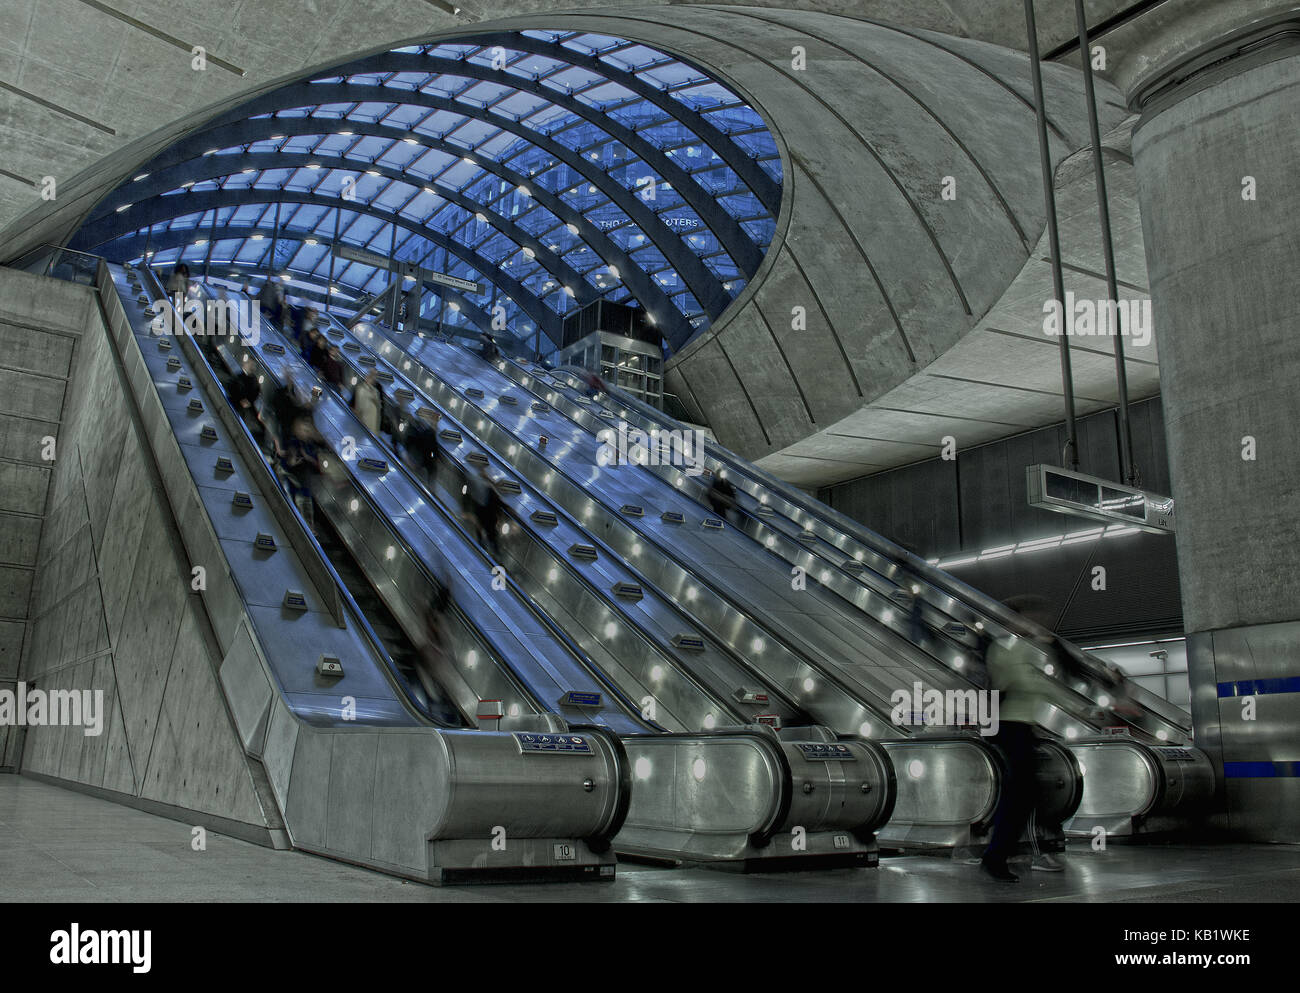 Escaliers mécaniques de la station de métro Canary Wharf, London, England, UK Banque D'Images